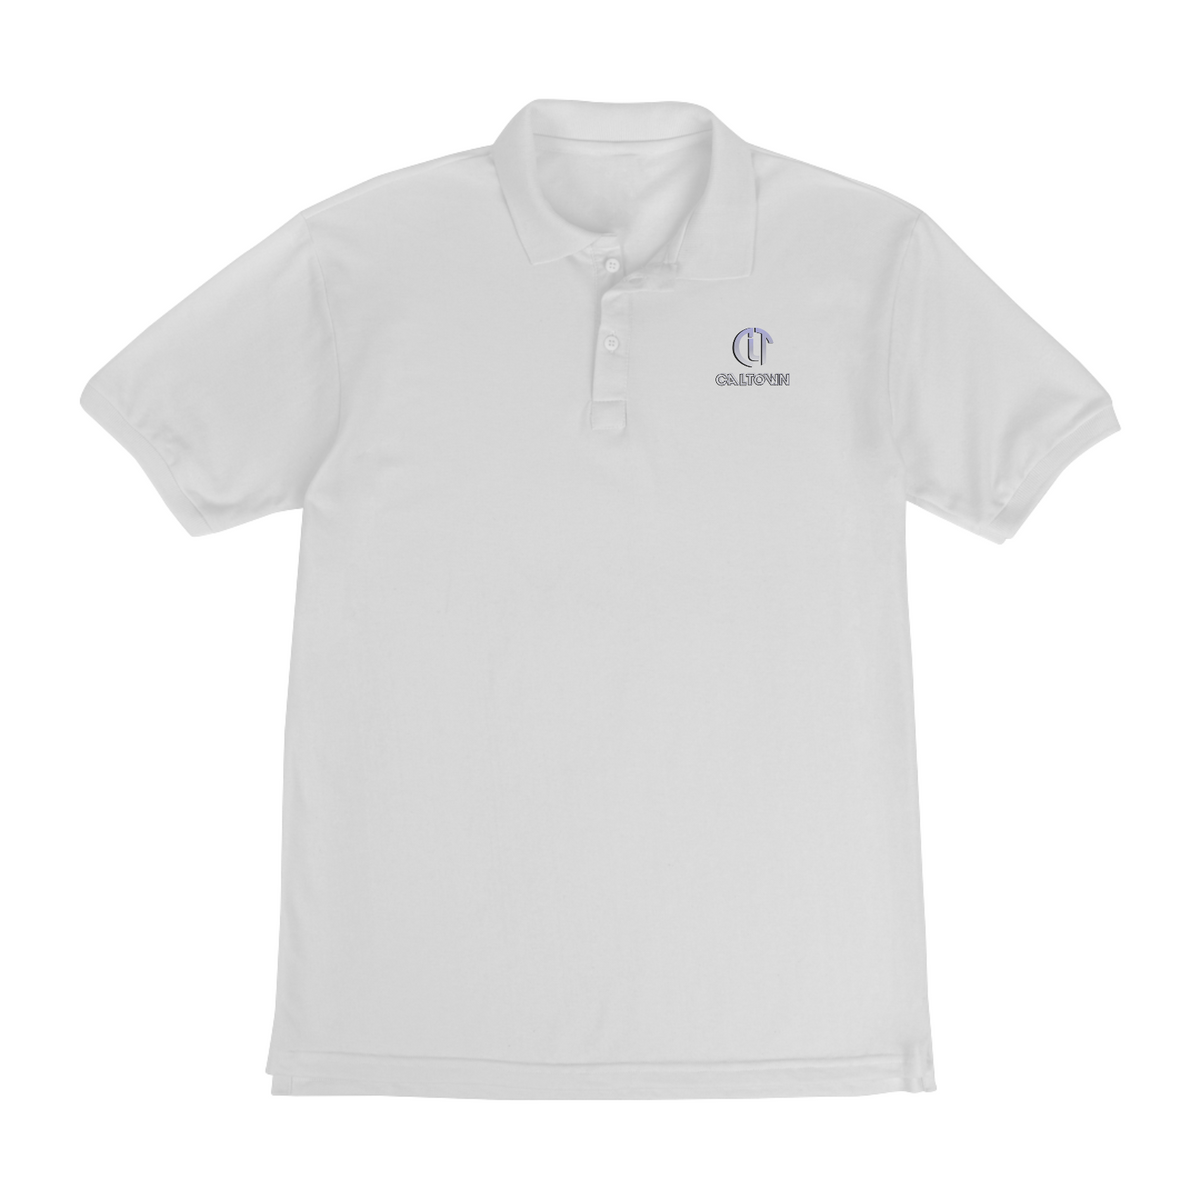 Nome do produto: Camiseta Polo Branca - Caltown